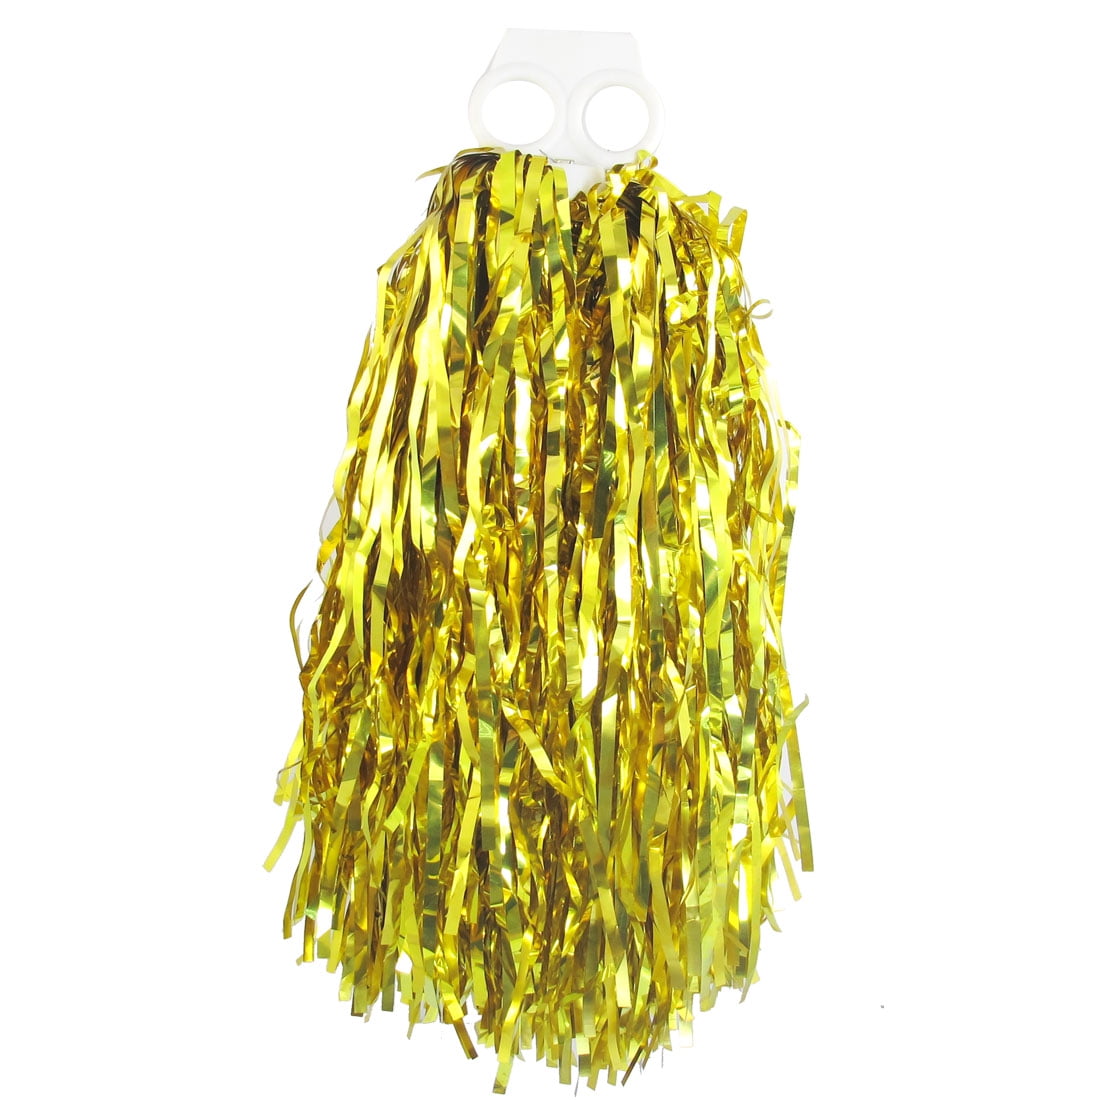 Unique Bargains Gold Tone Plastic Cheer Dance Spirit Cheerleading Pom ...